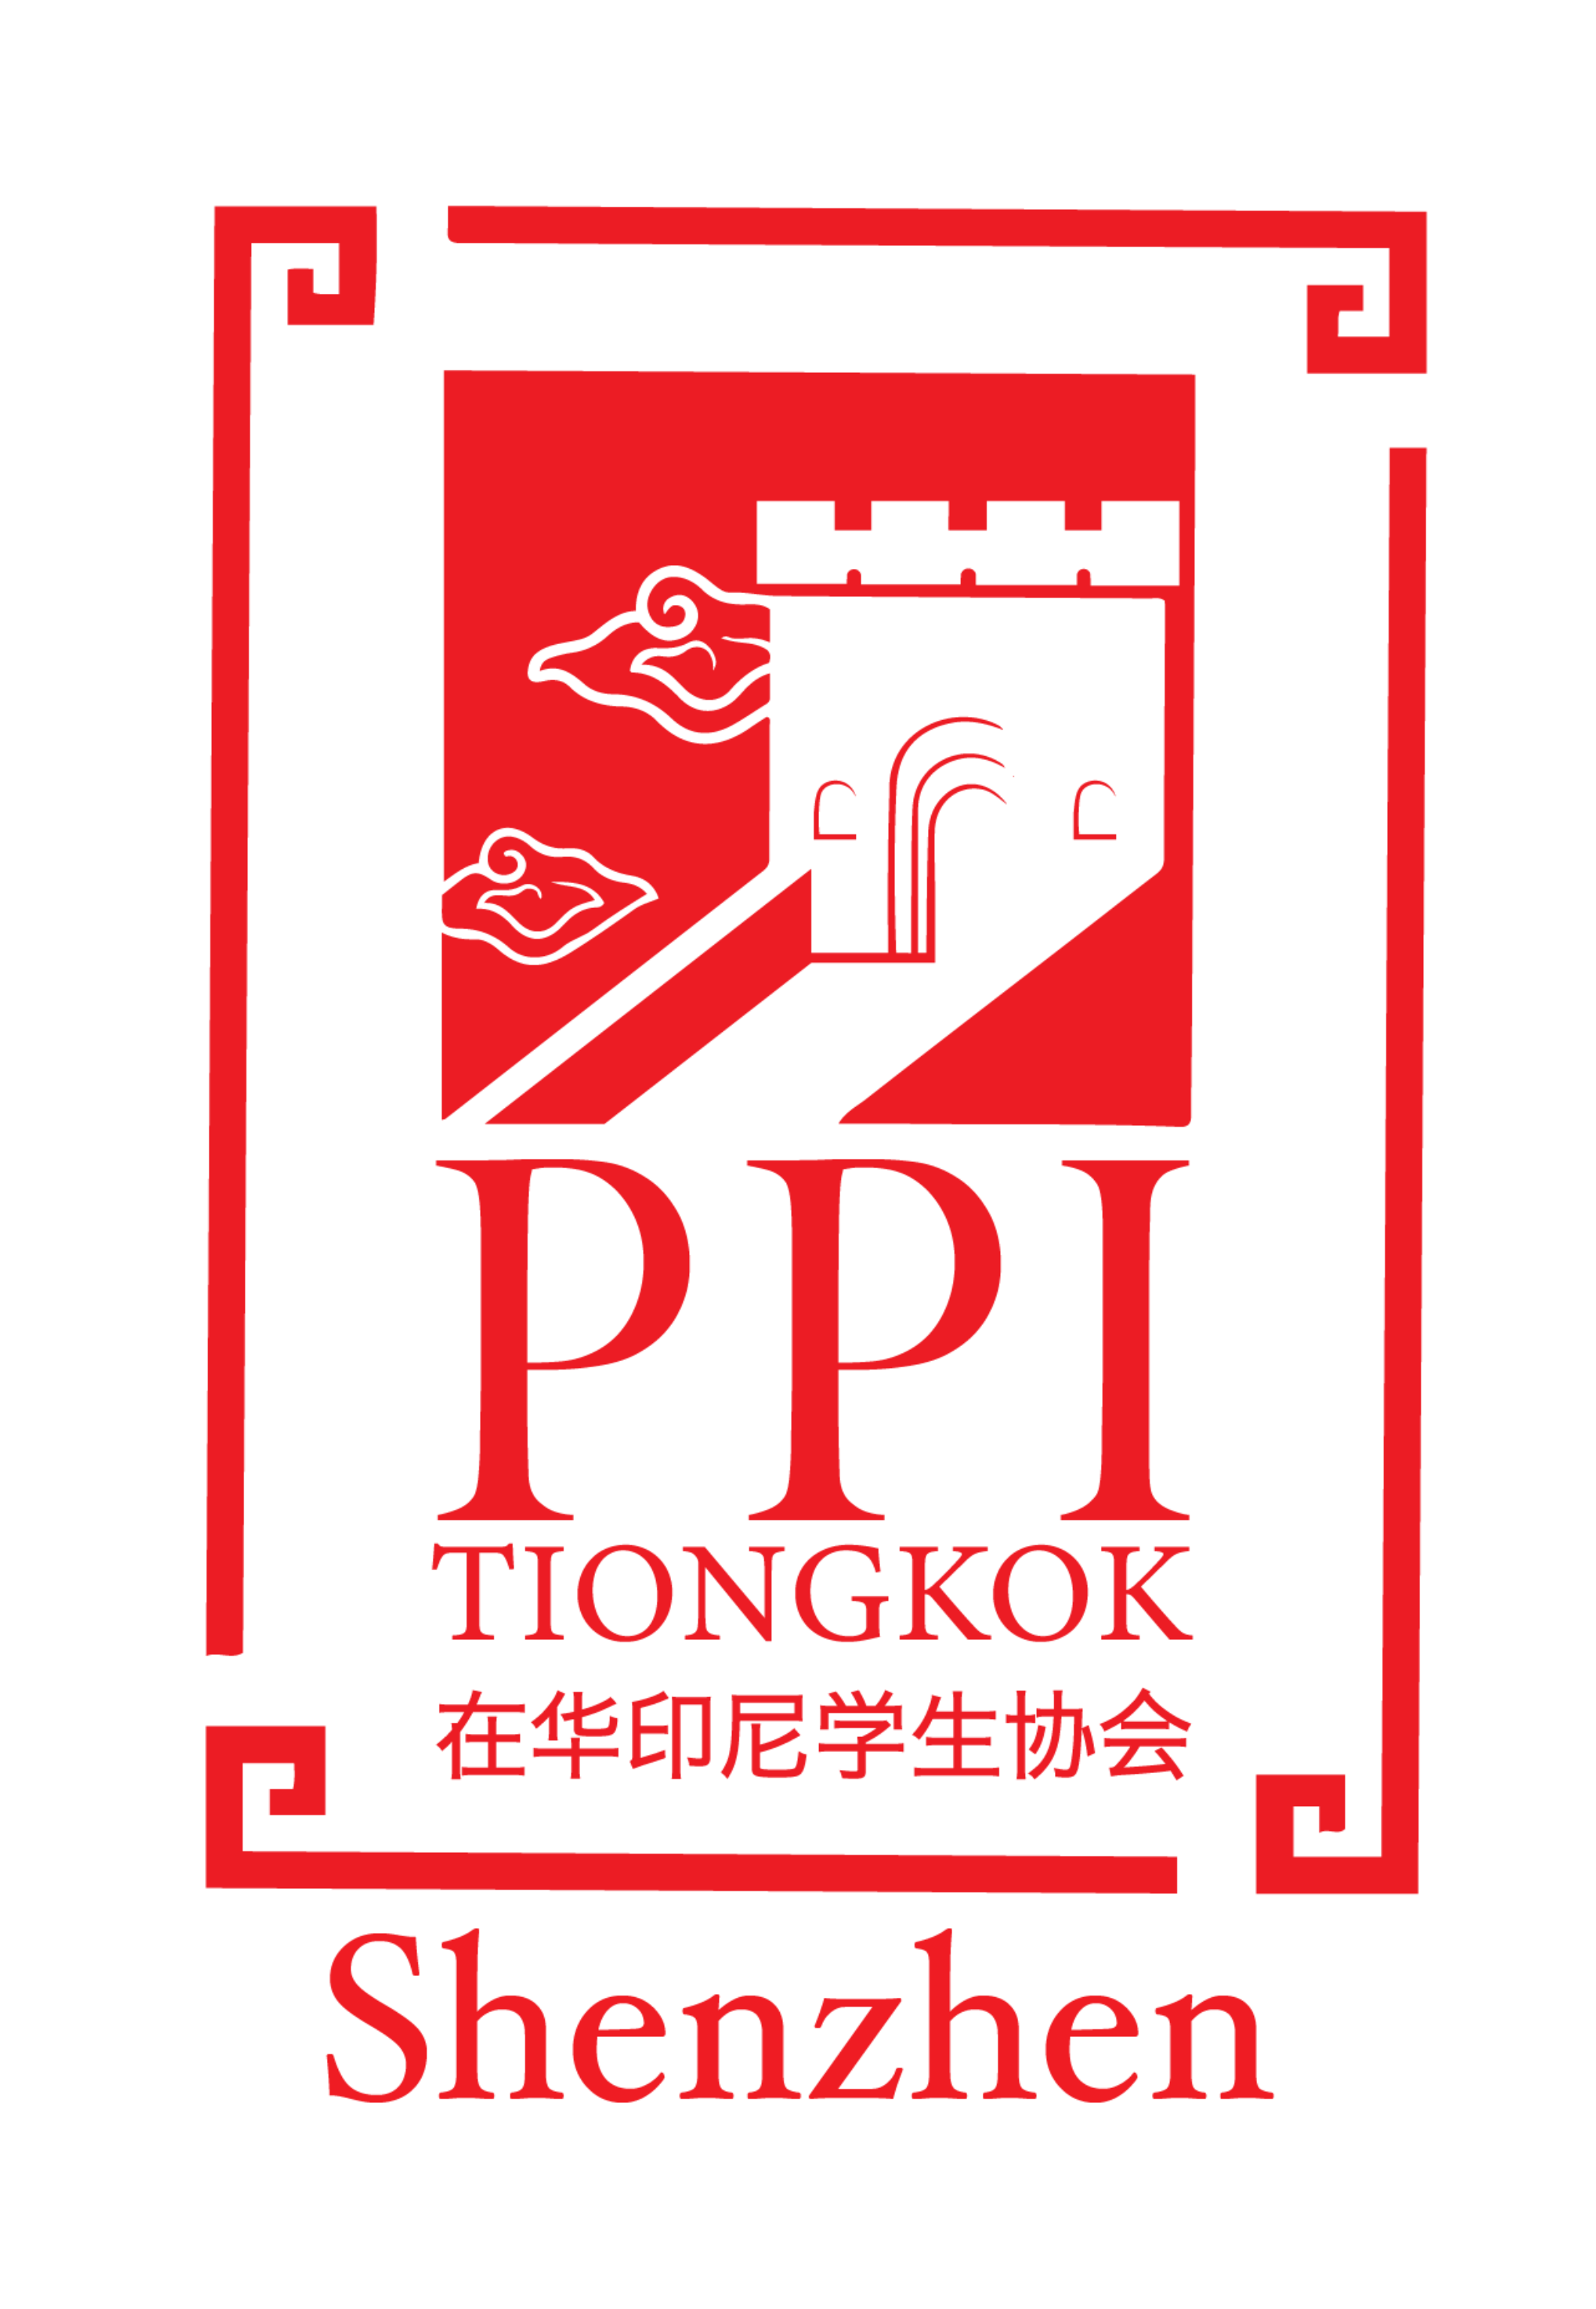 PPIT Shenzhen Logo